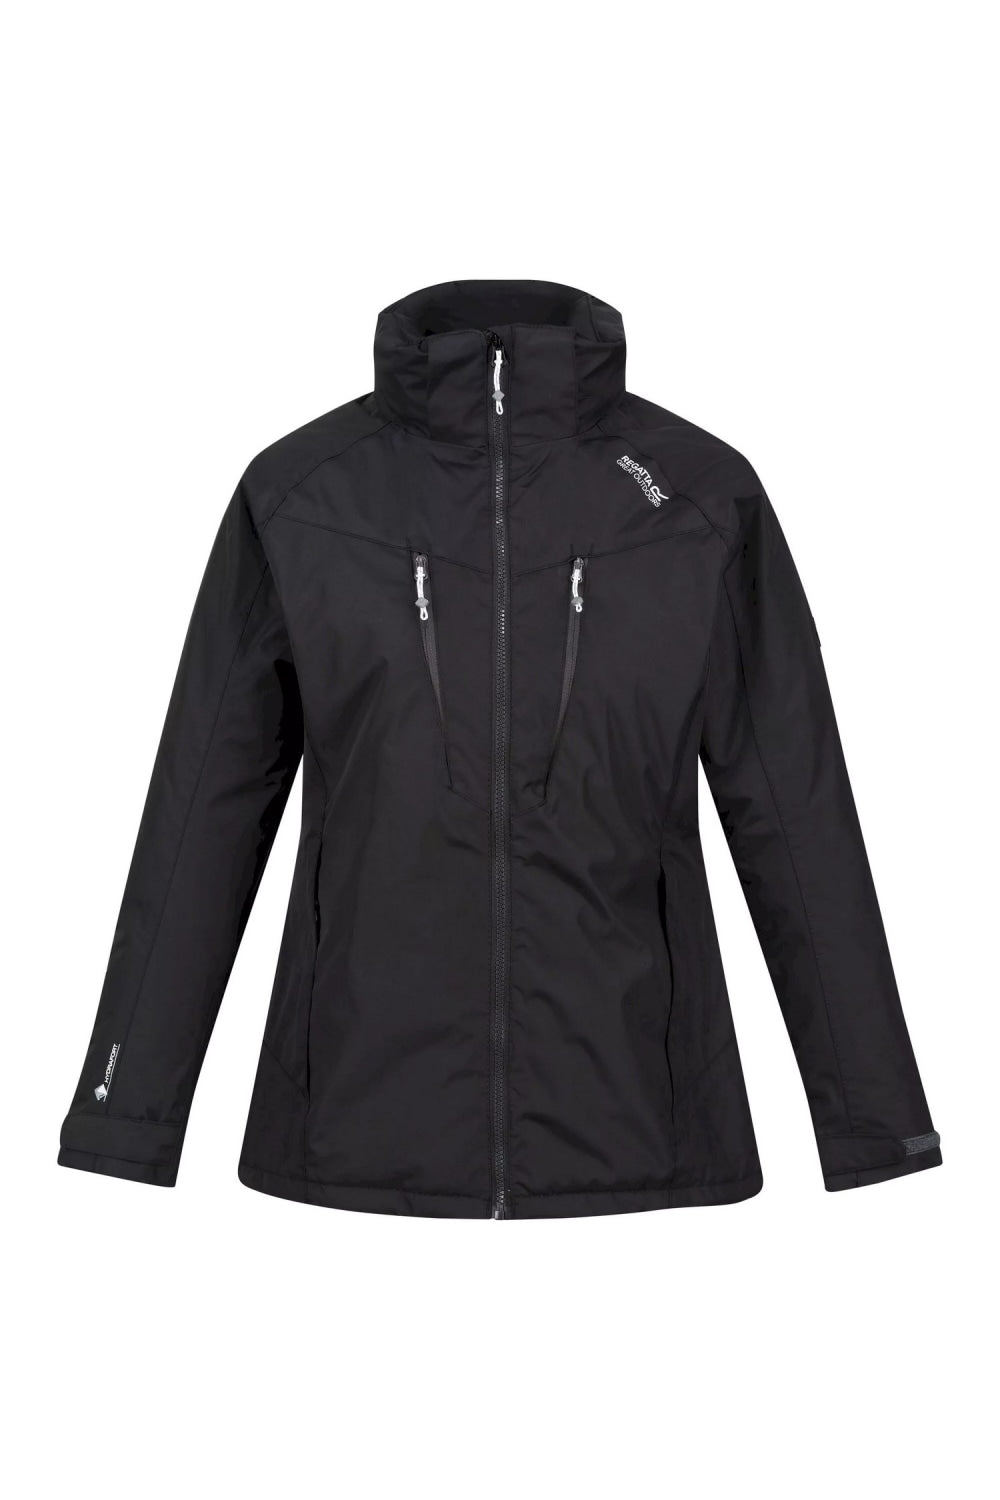 Womens/Ladies Calderdale Winter Waterproof Jacket - Black